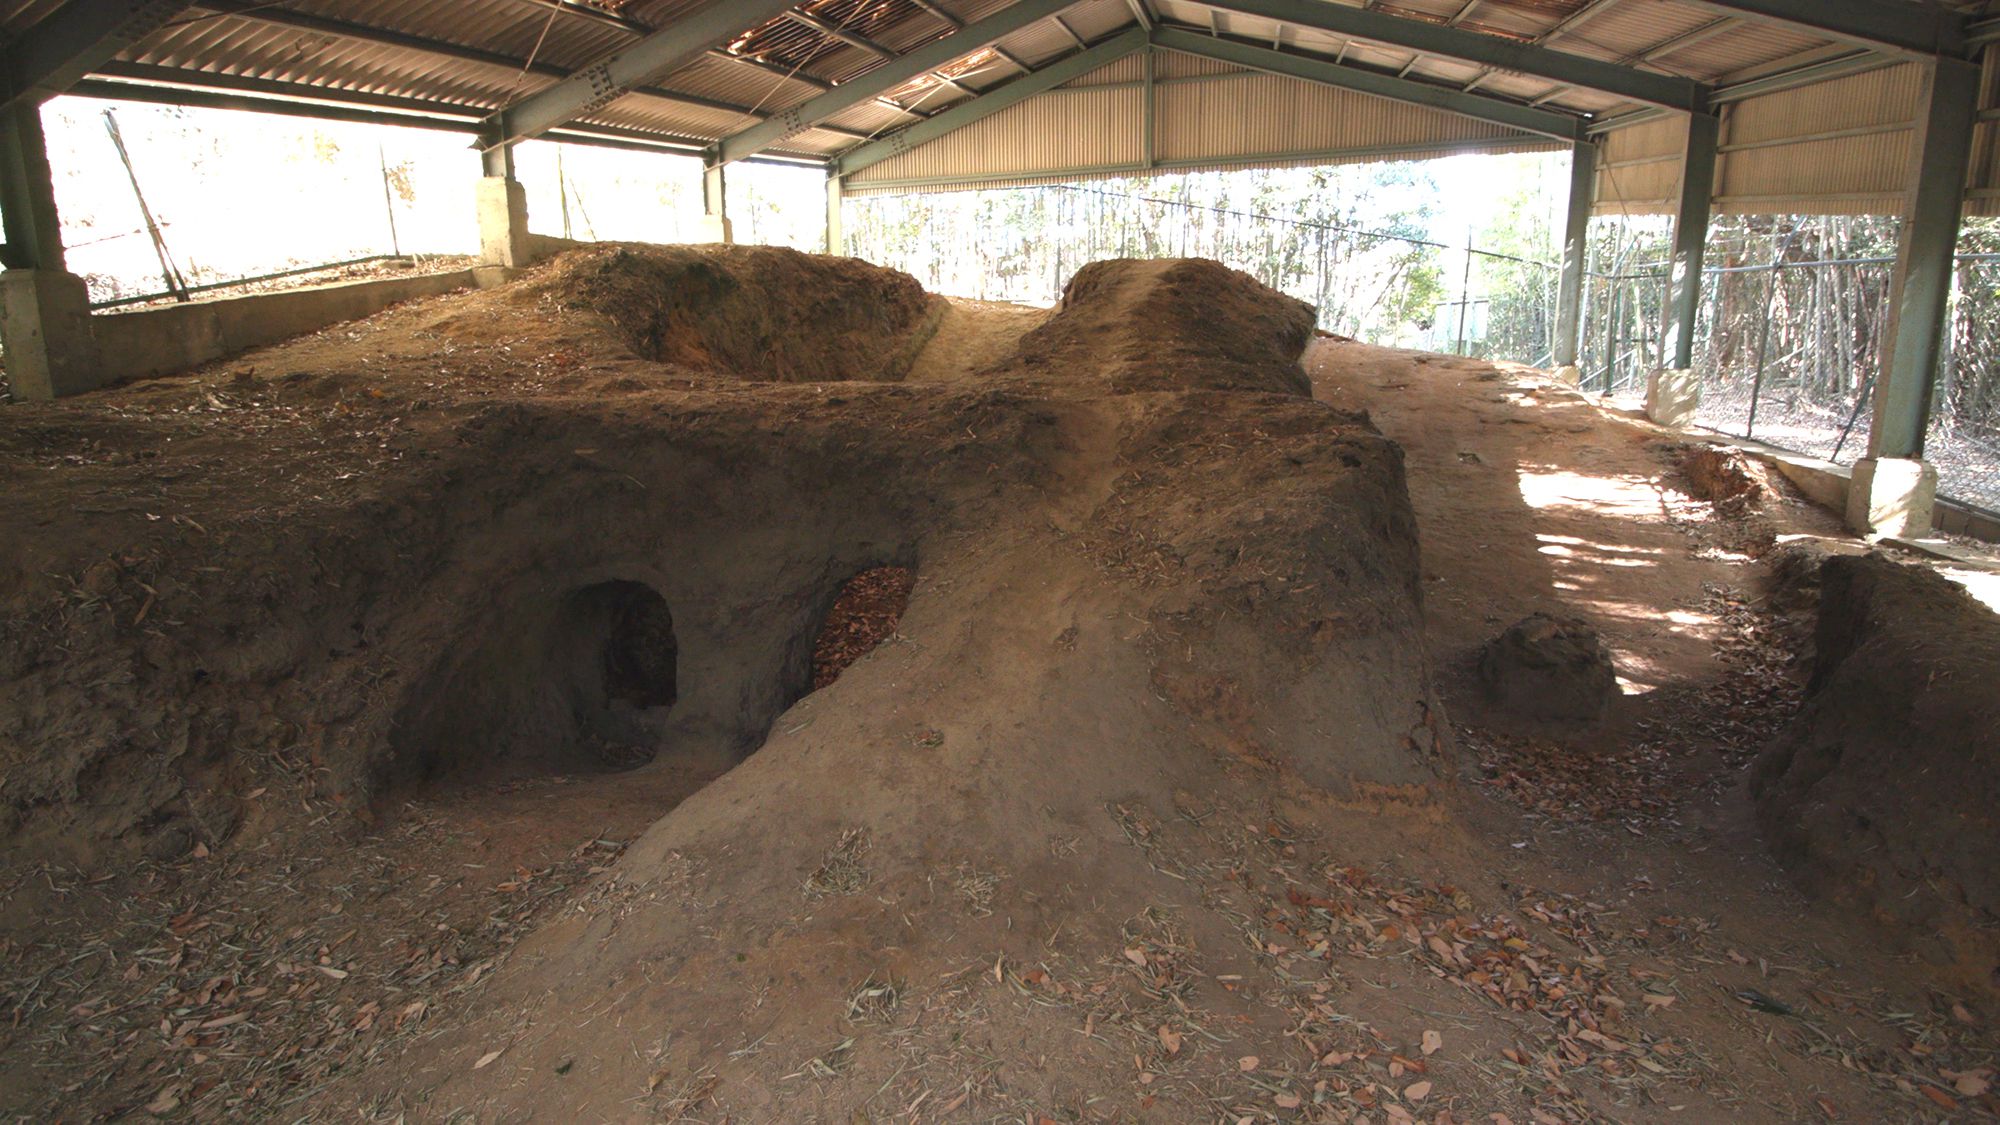 常滑的籠池古窯。它是平安時代末期的窖窯，在坡面上經過深挖建造而成。